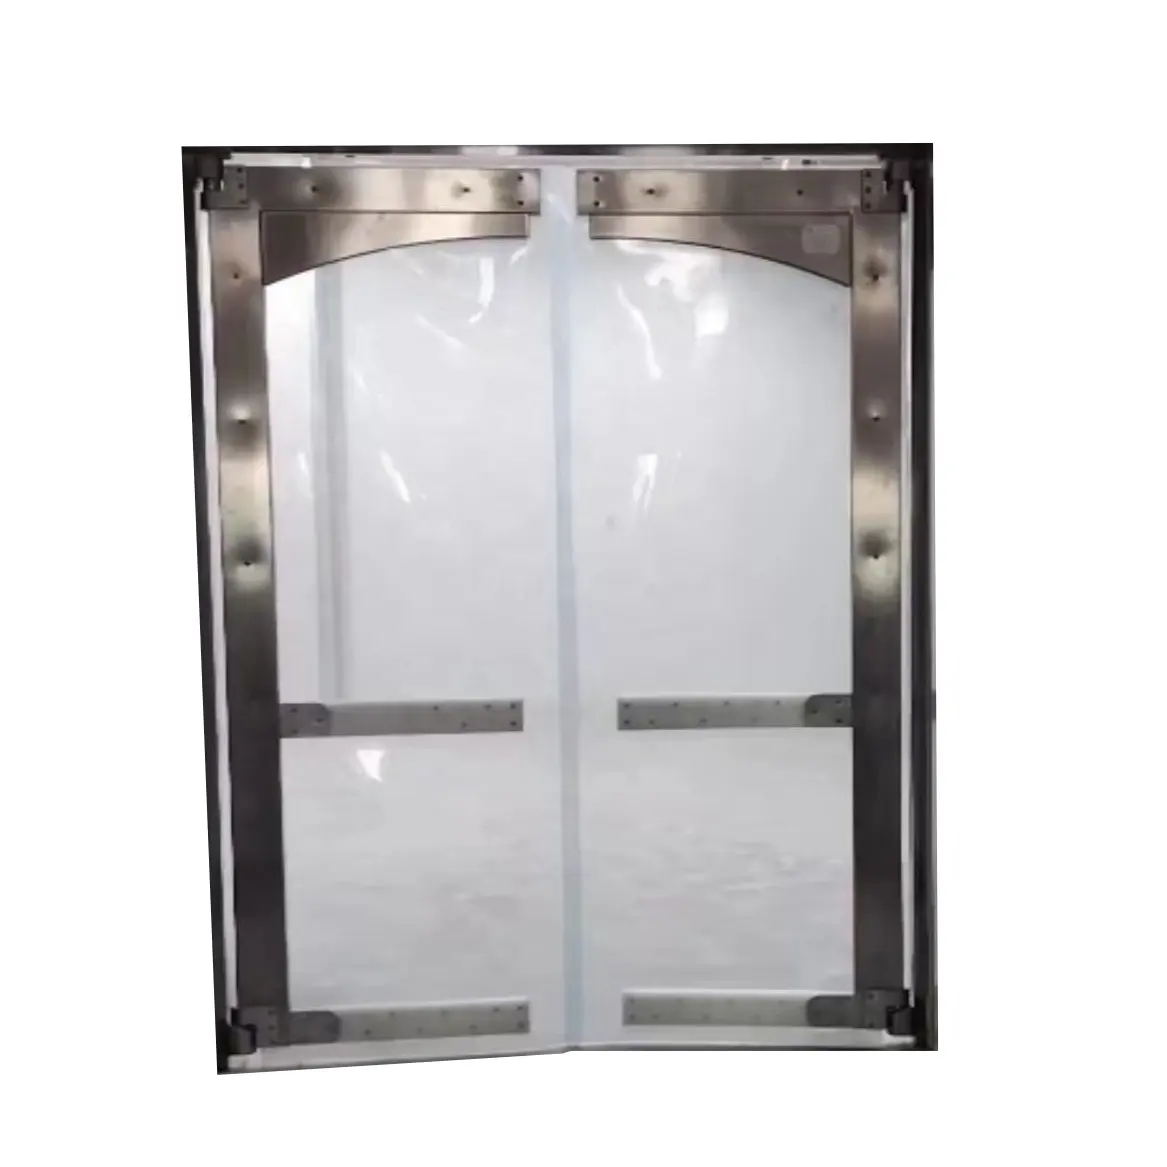 Hoja de PVC de diseño gráfico industrial de plástico resistente al agua, cámara frigorífica de aluminio ST, puerta corredera de plástico flexible de PVC, Manual de hotel